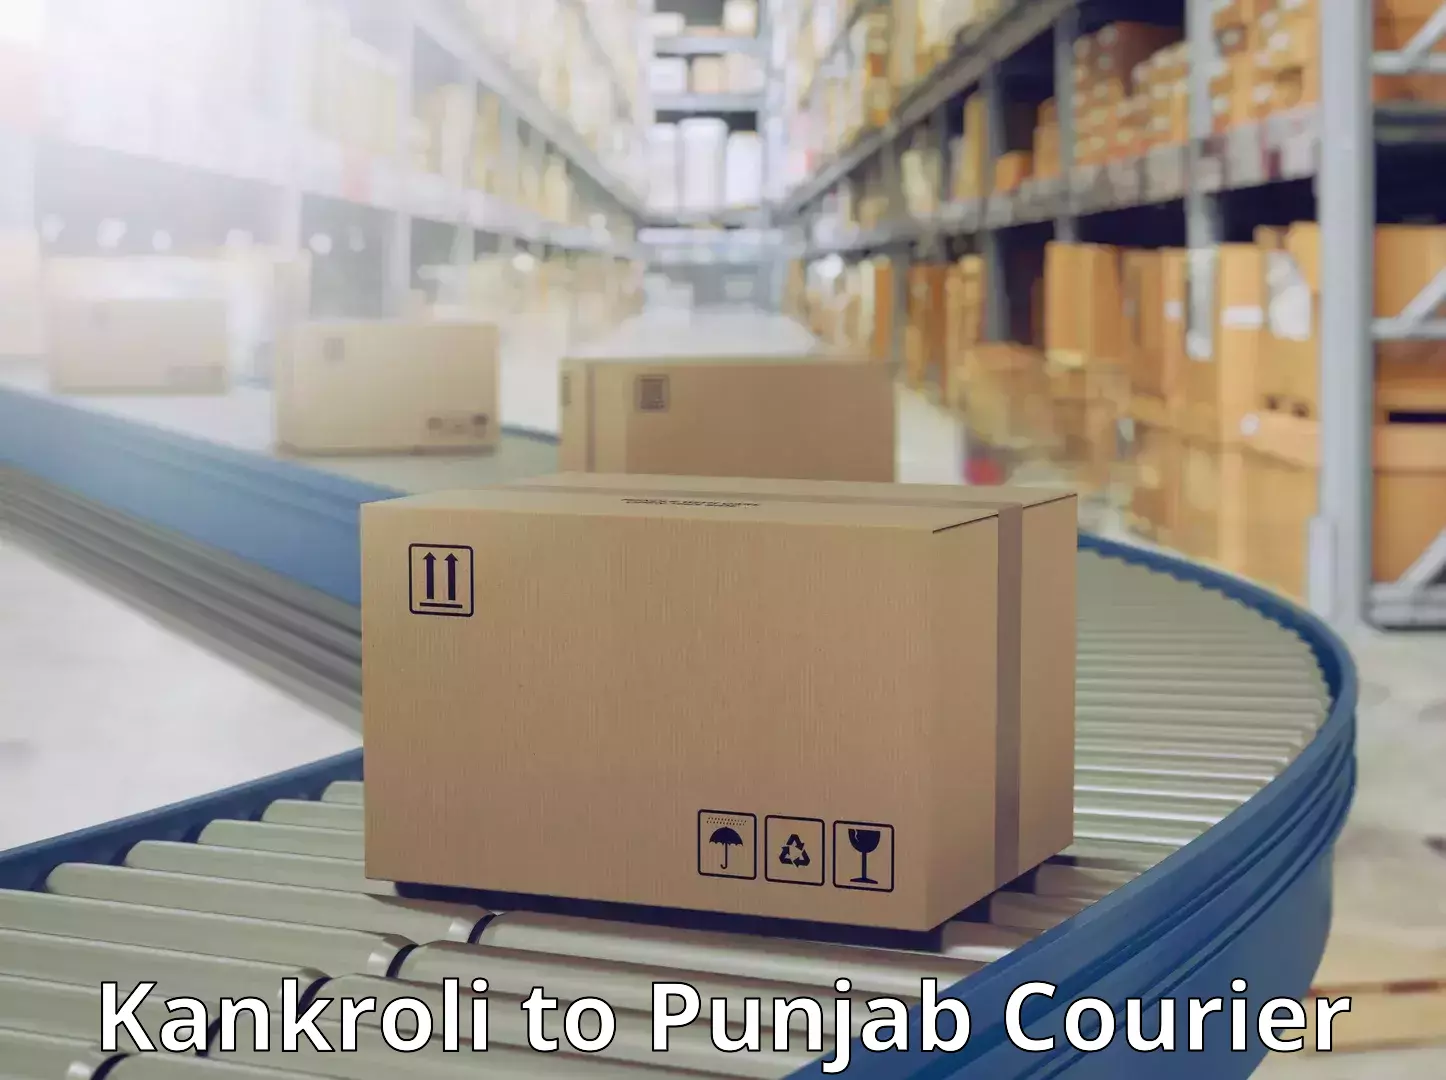 International courier rates Kankroli to Central University of Punjab Bathinda